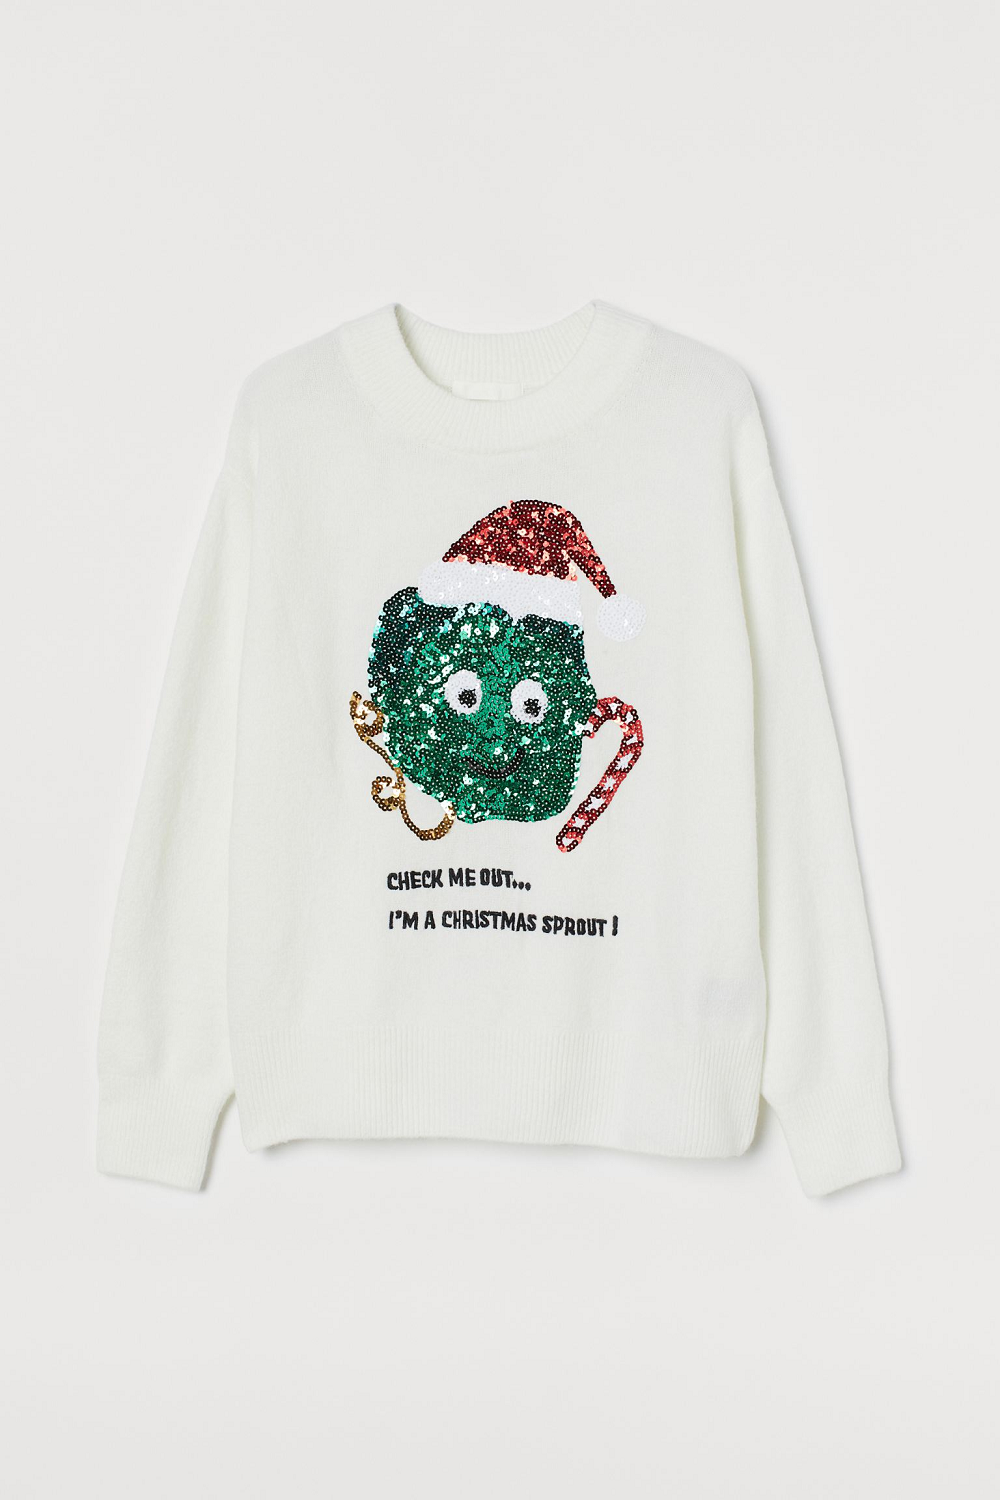 Ugly Christmas Sweater H&M božićni puloveri Božić 2020.